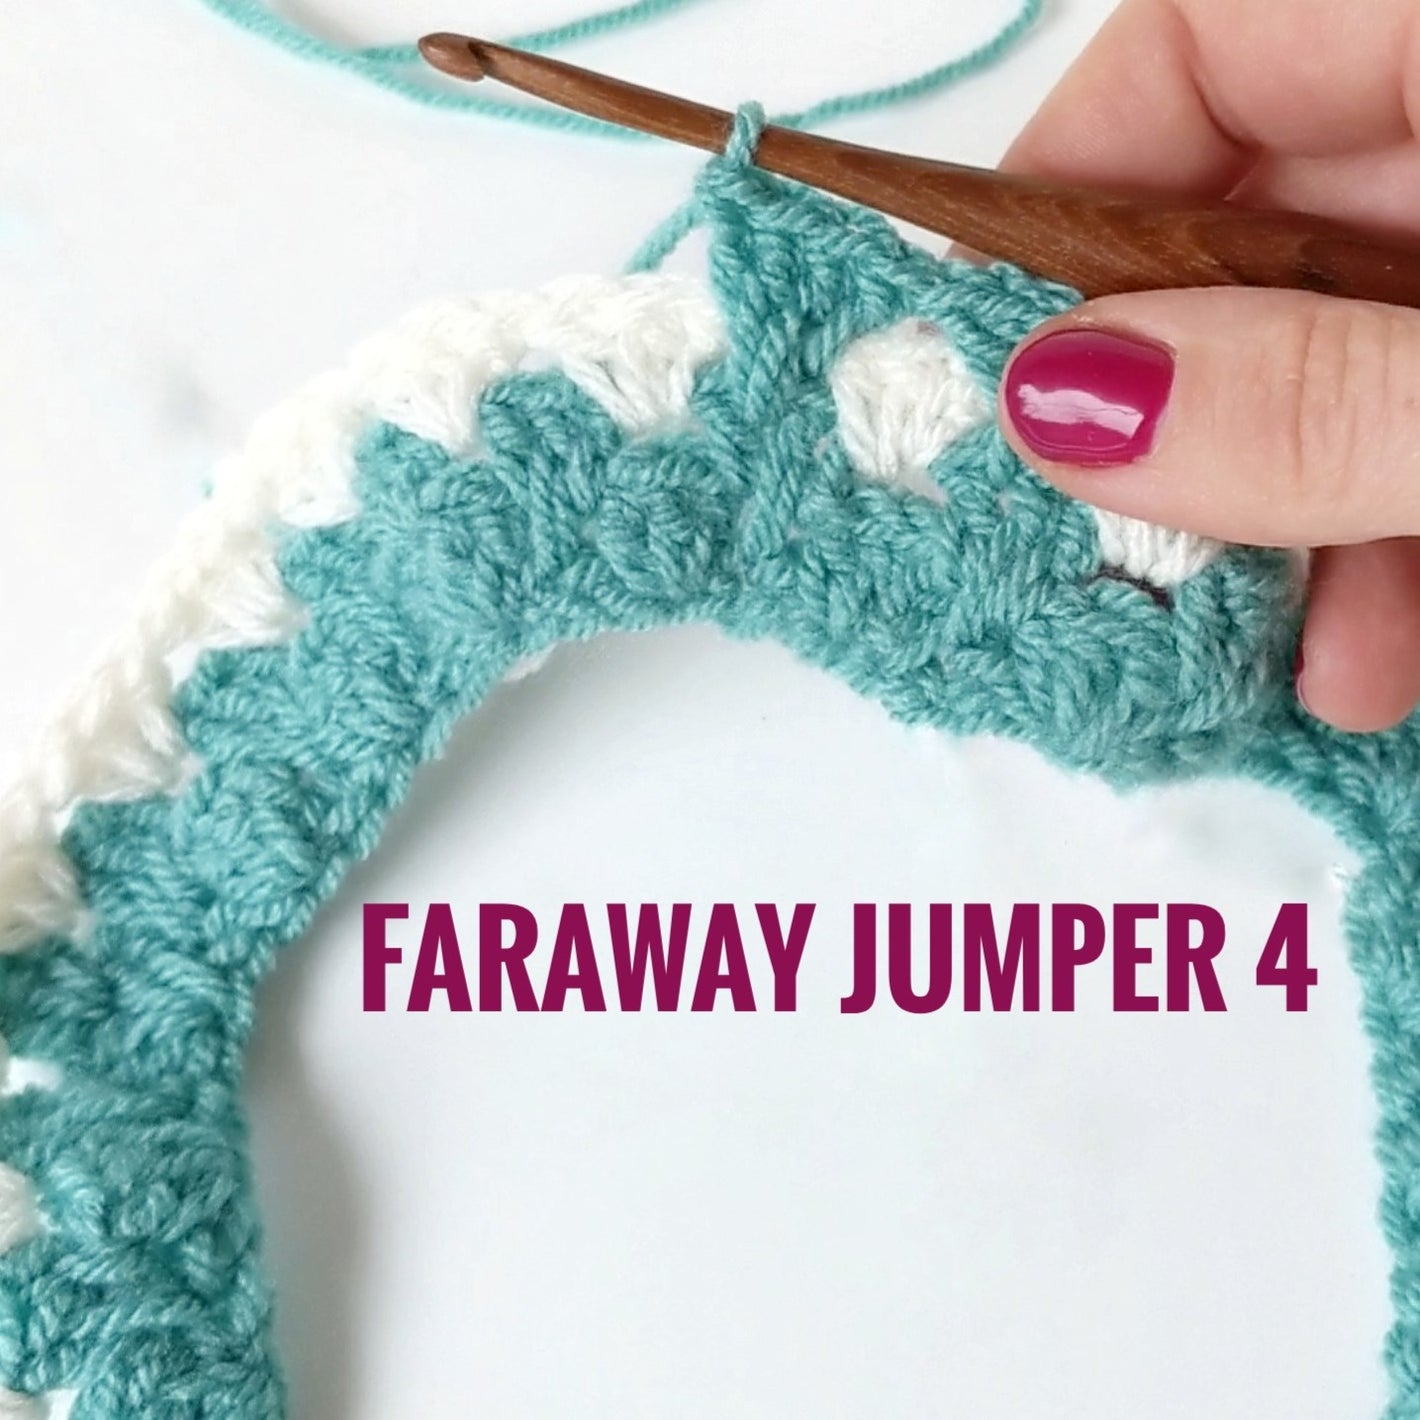 Faraway Jumper round 4